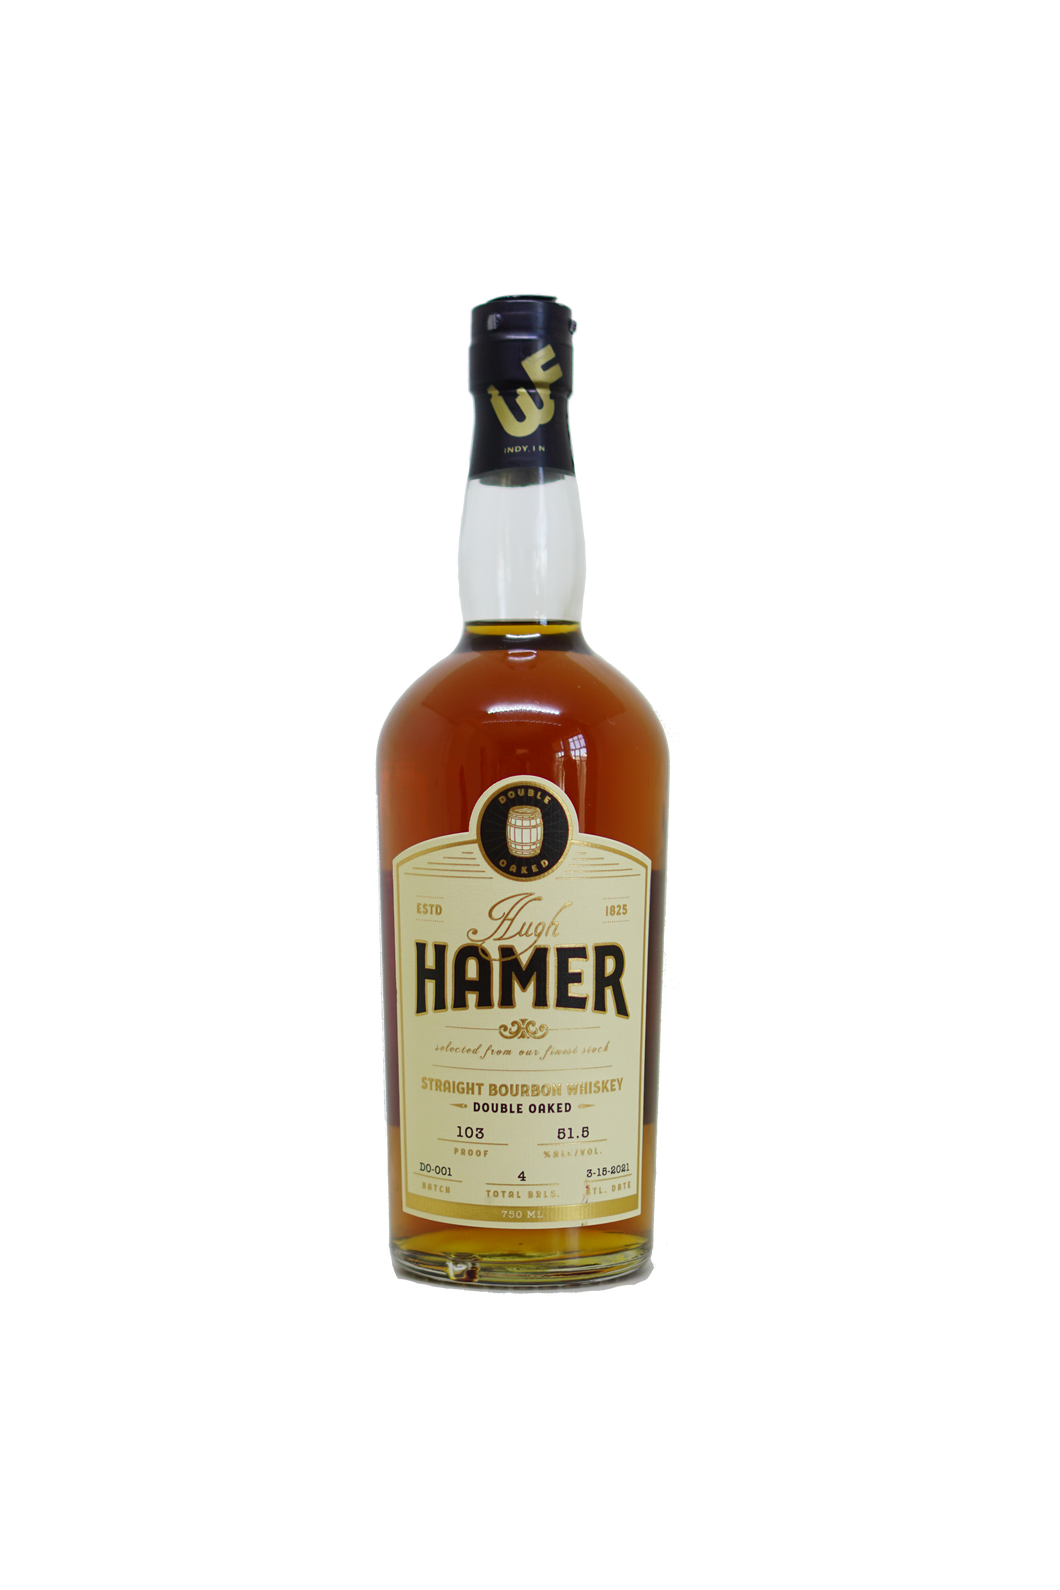 Hugh Hamer Straight Bourbon Whiskey Double Oaked